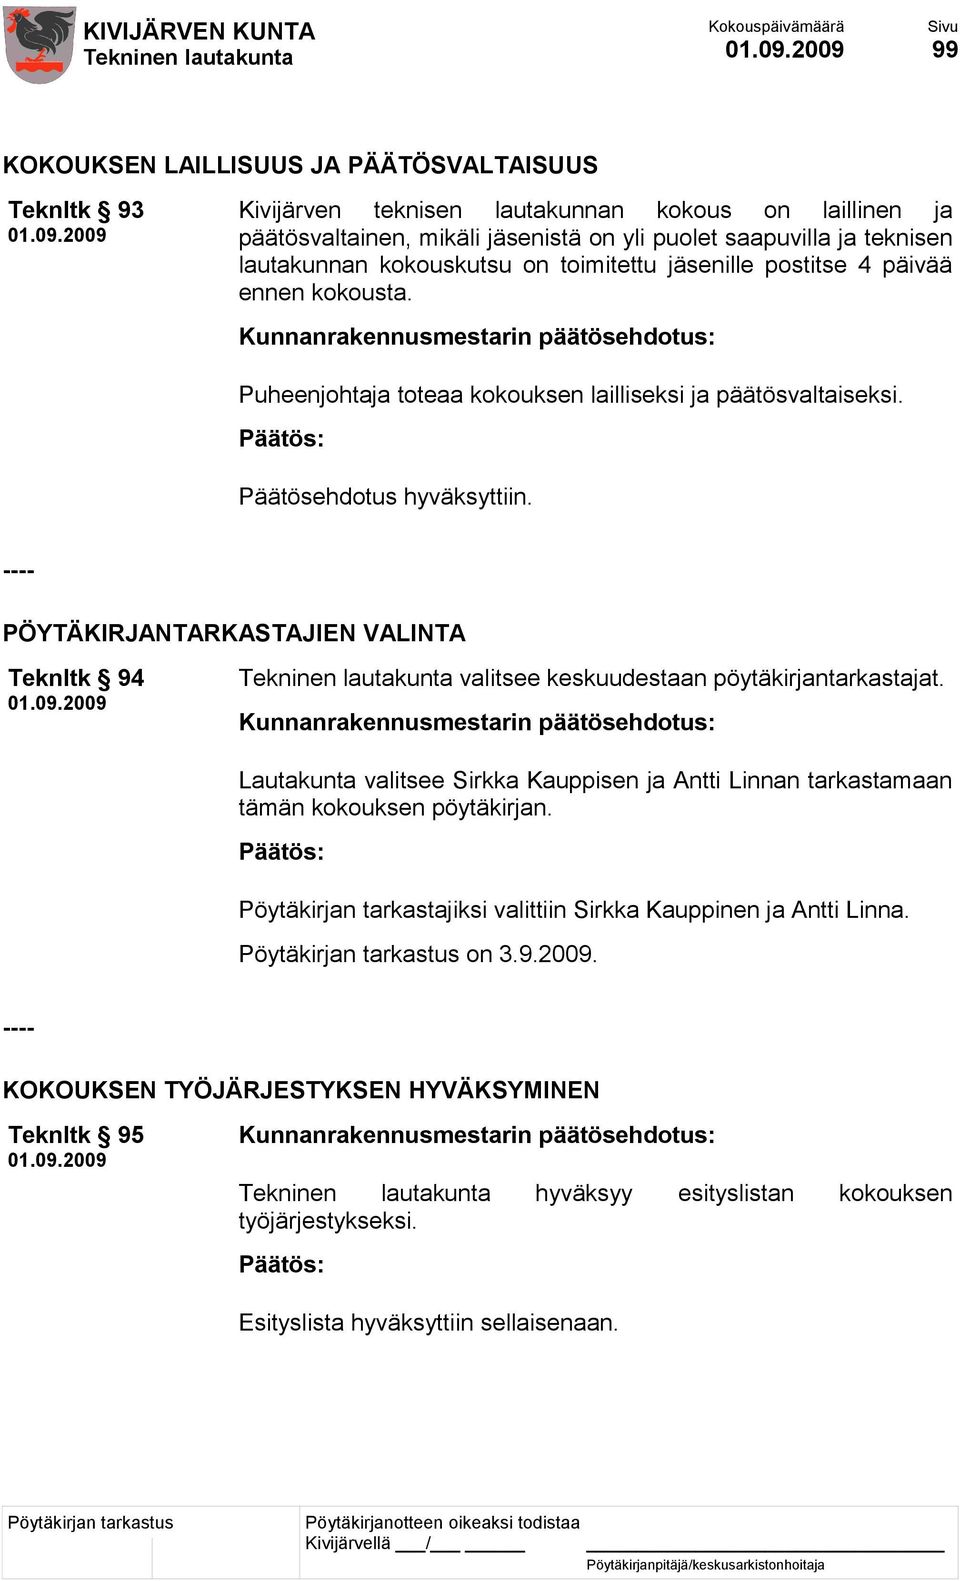 ---- PÖYTÄKIRJANTARKASTAJIEN VALINTA Teknltk 94 valitsee keskuudestaan pöytäkirjantarkastajat. Lautakunta valitsee Sirkka Kauppisen ja Antti Linnan tarkastamaan tämän kokouksen pöytäkirjan.